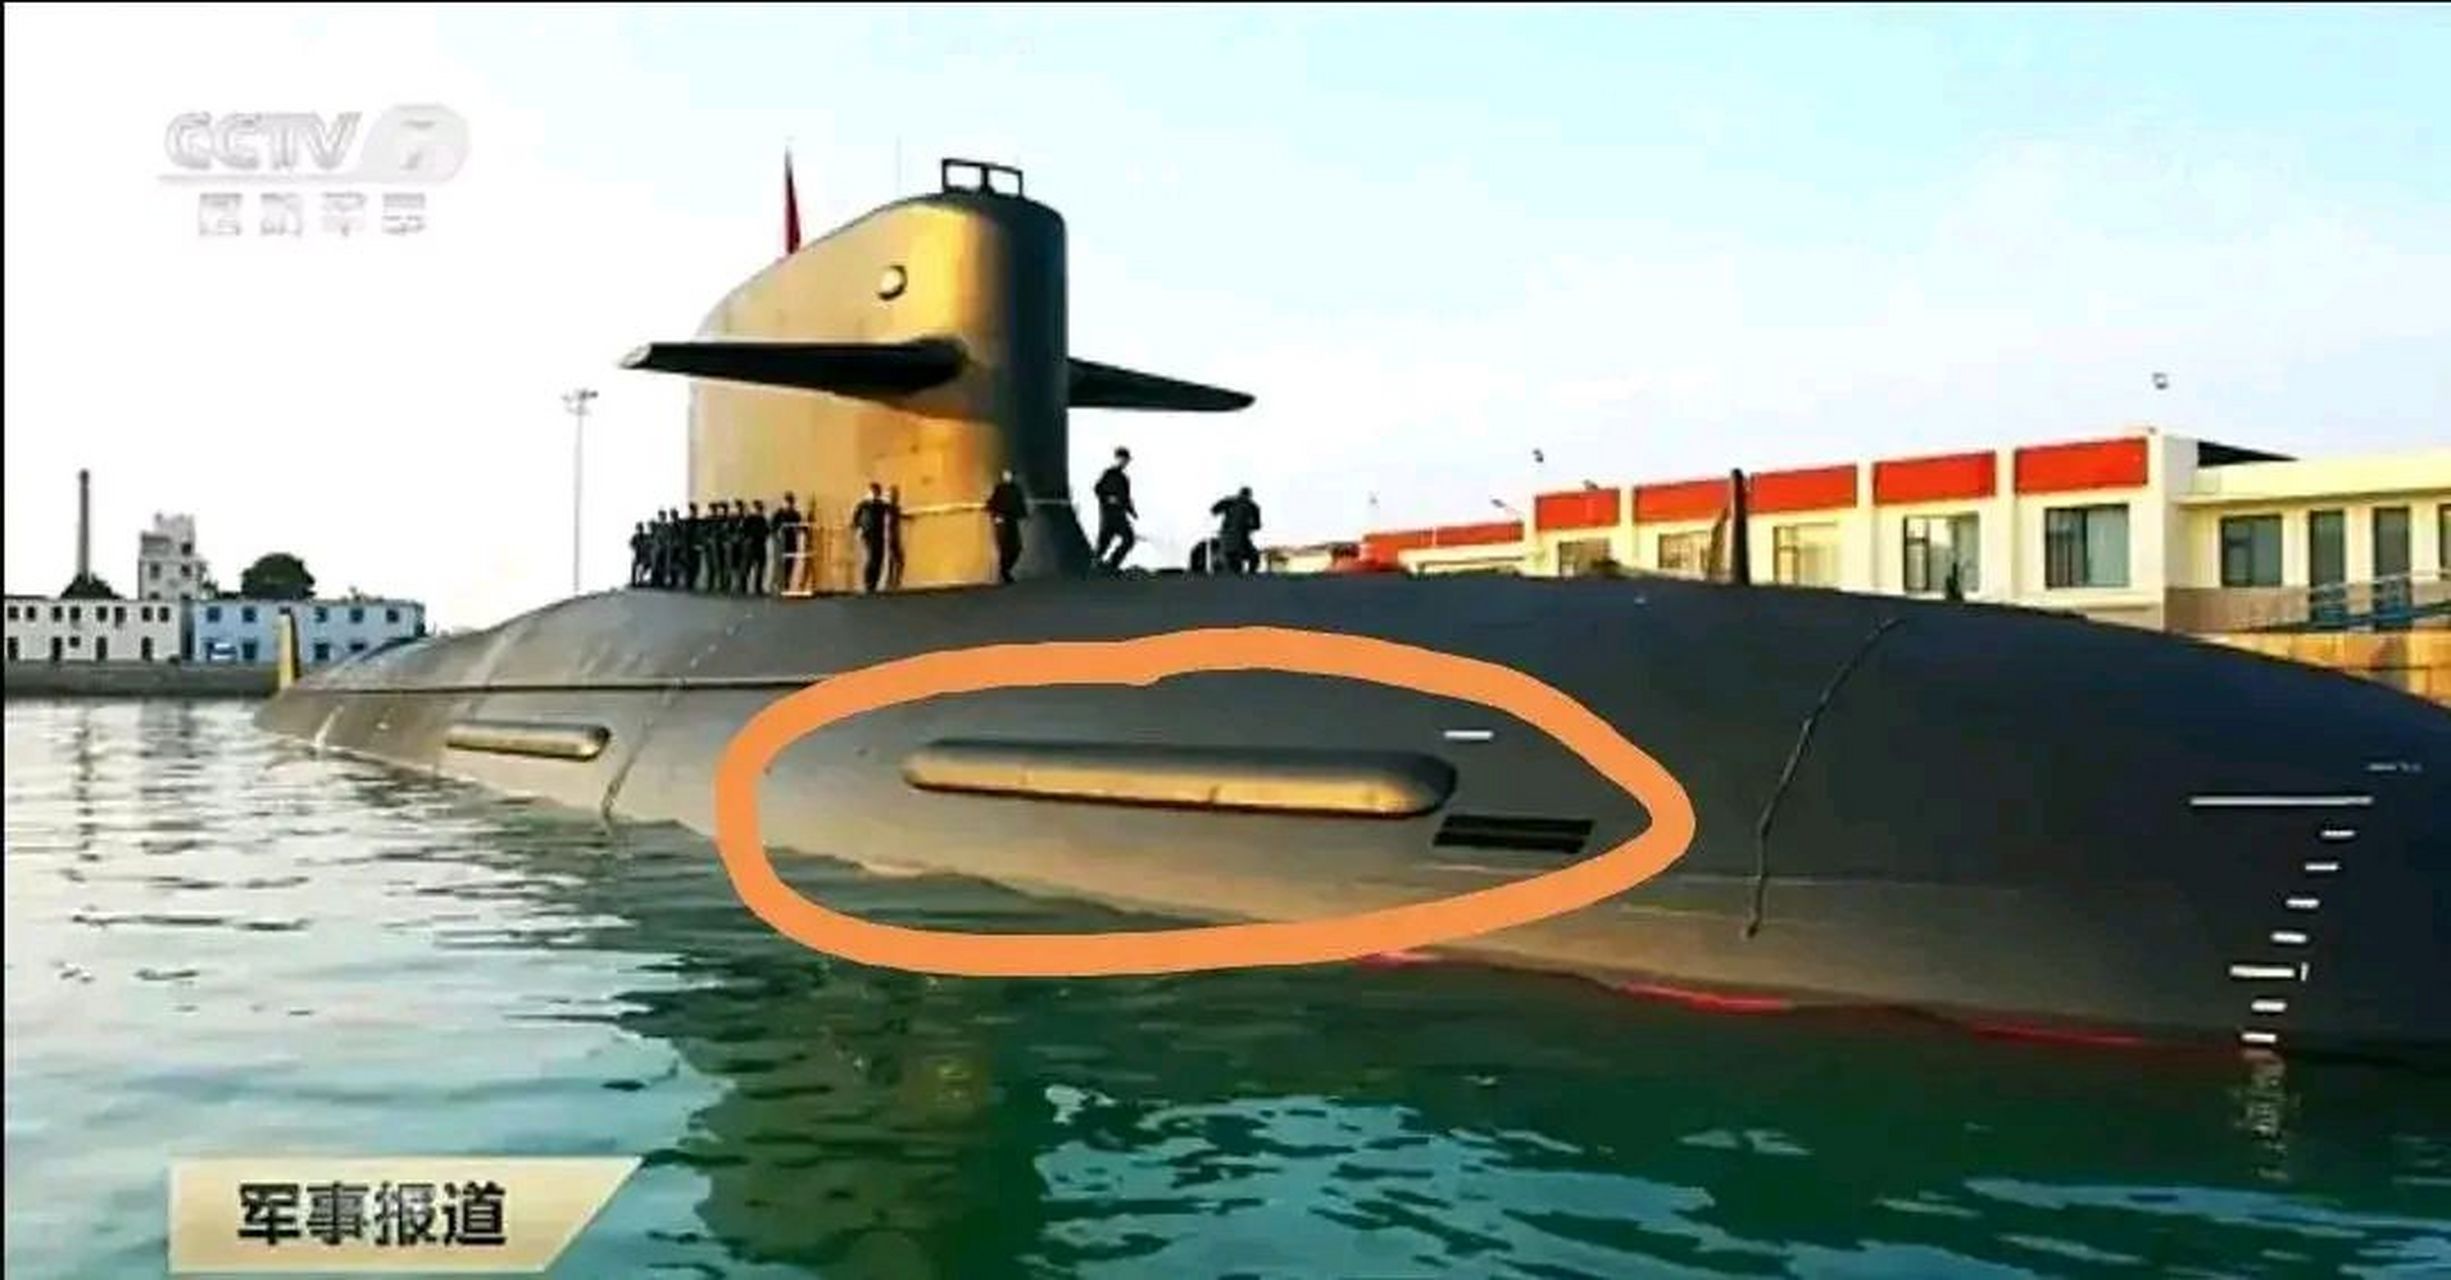 中国093核潜艇:世界领先的声呐技术  中国核潜艇技术再创新高,其最新